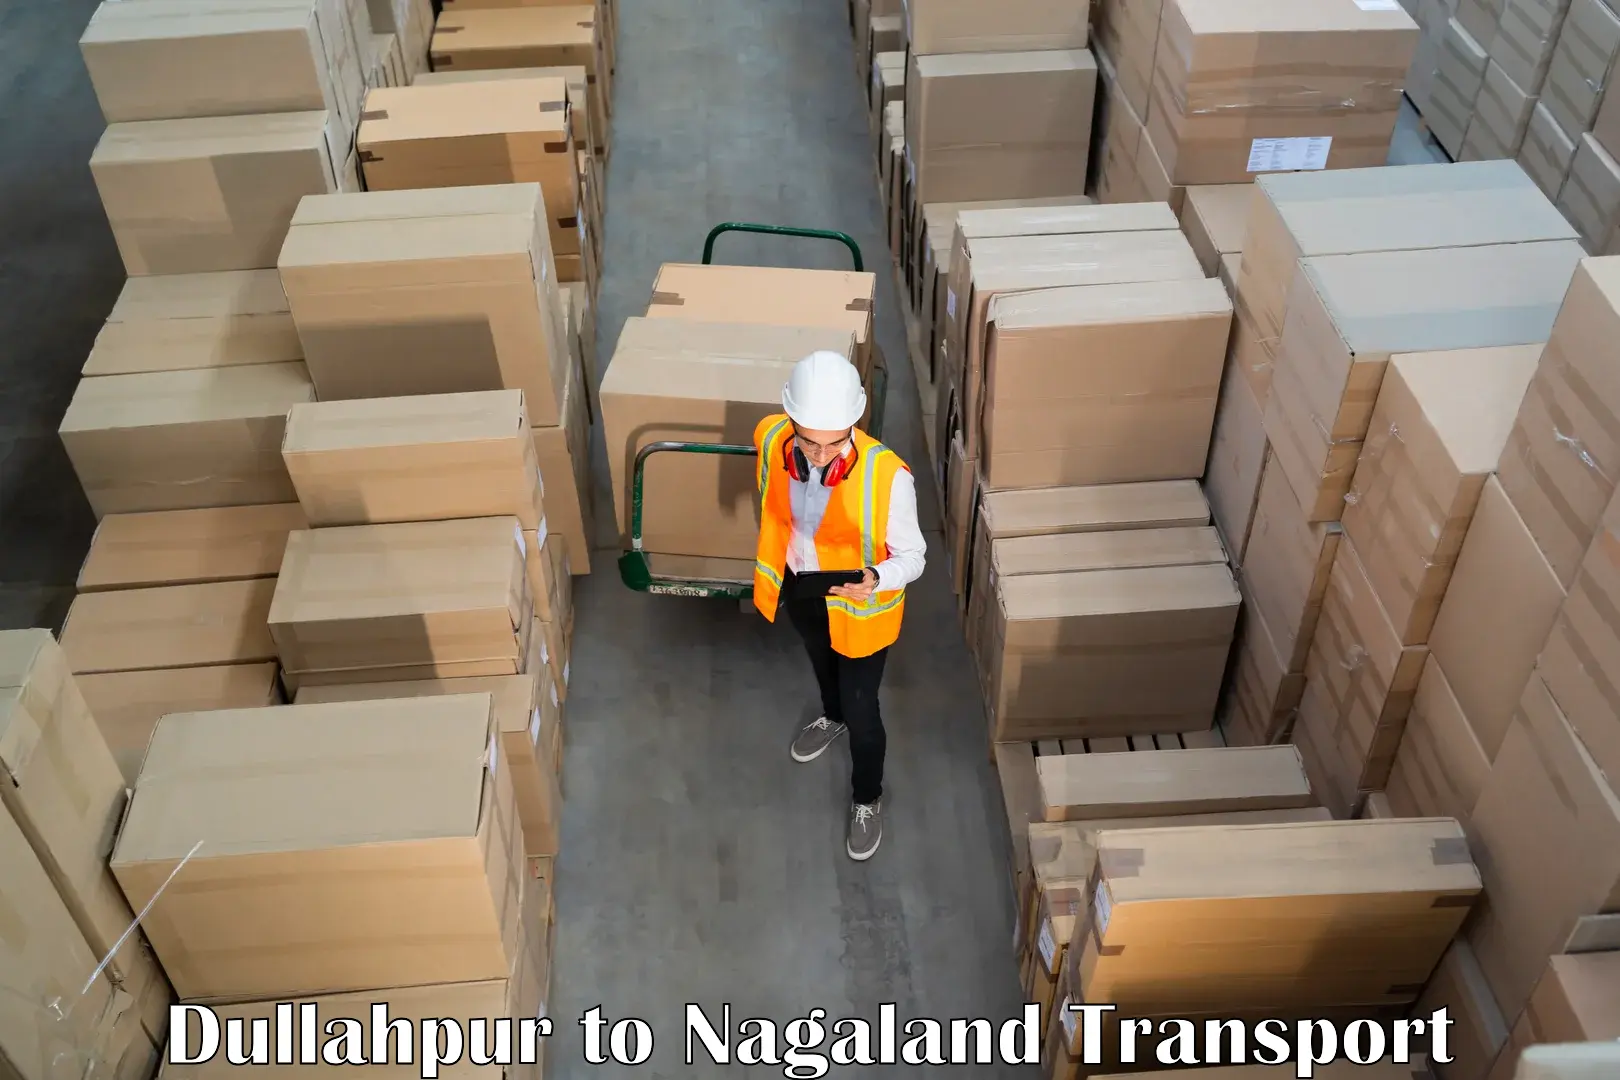 Furniture transport service Dullahpur to Longleng